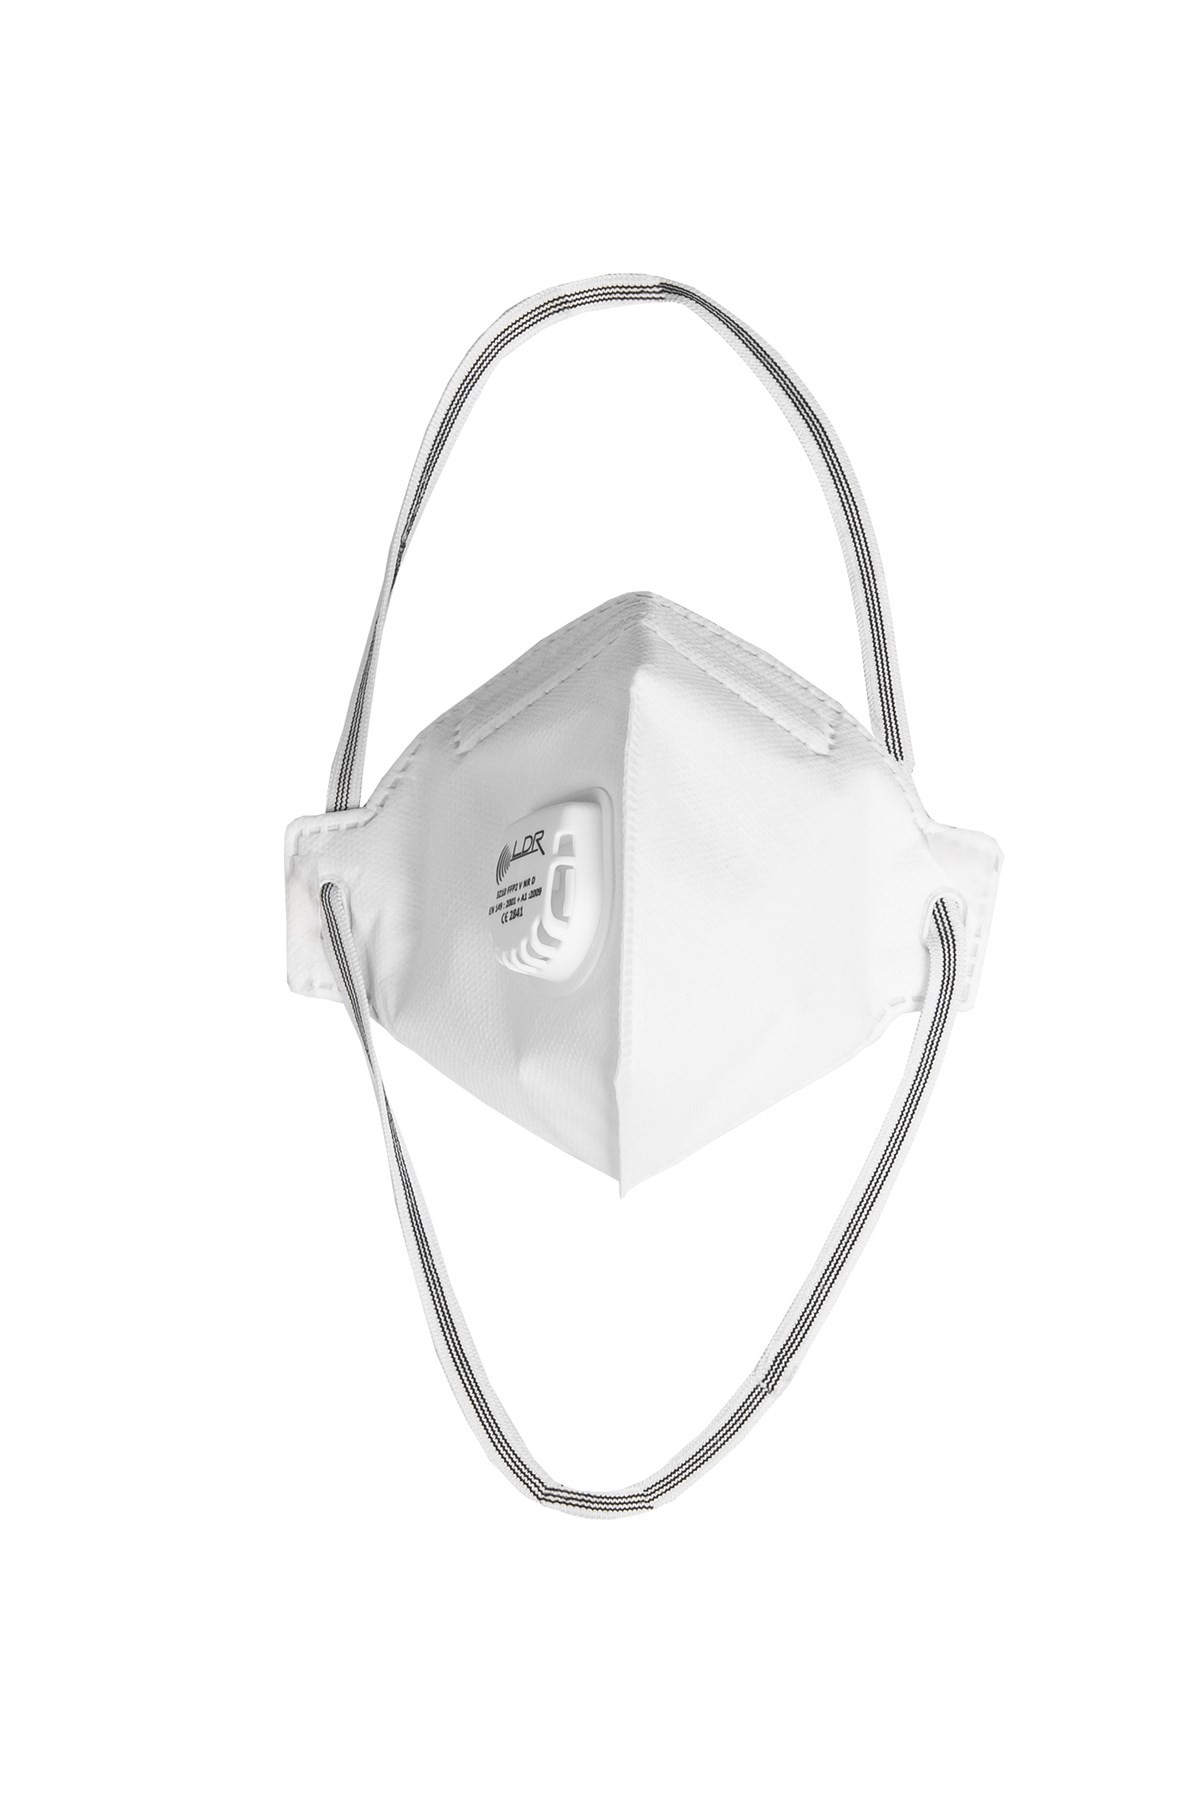 LDR 3210 FFP2 NR V Dust Mask White (Pack of 15) | Hsemarket